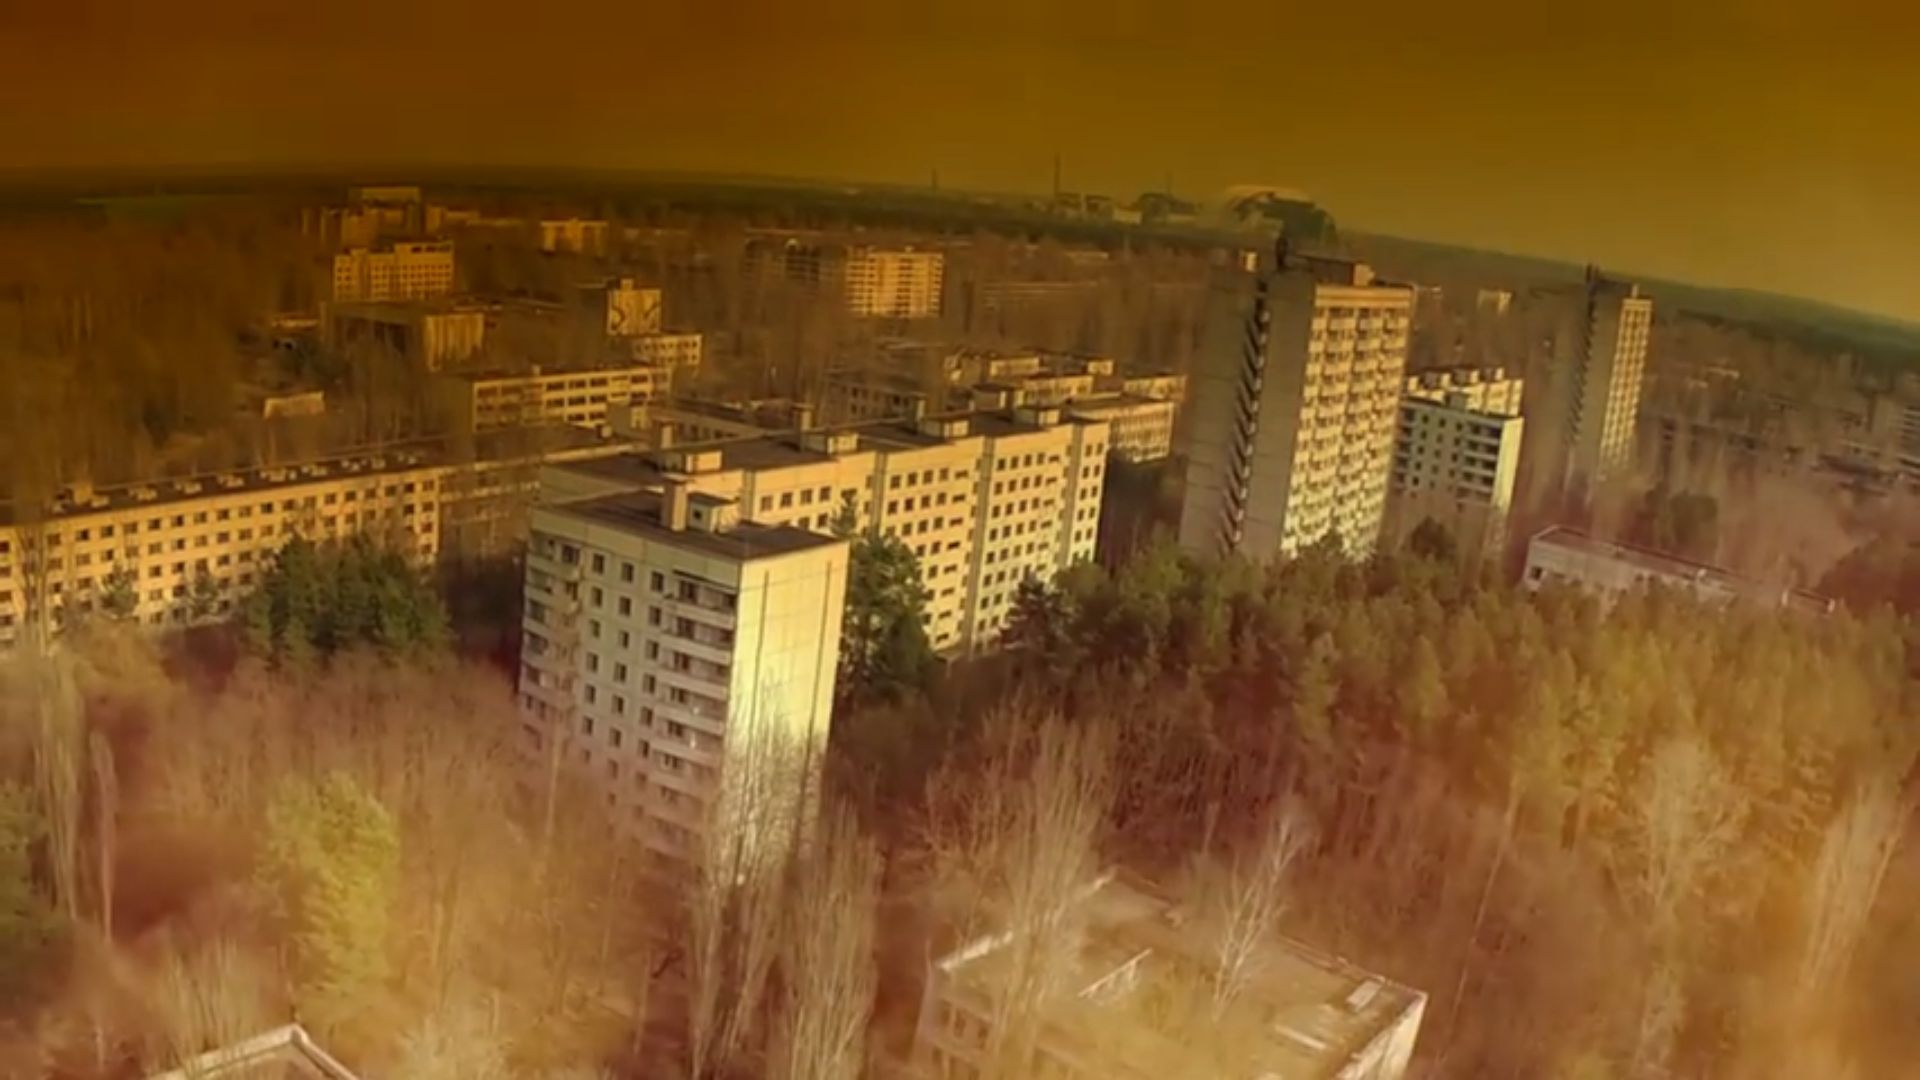 #dobrebopolskie Wirtualny spacer po miejscu katastrofy nuklearnej